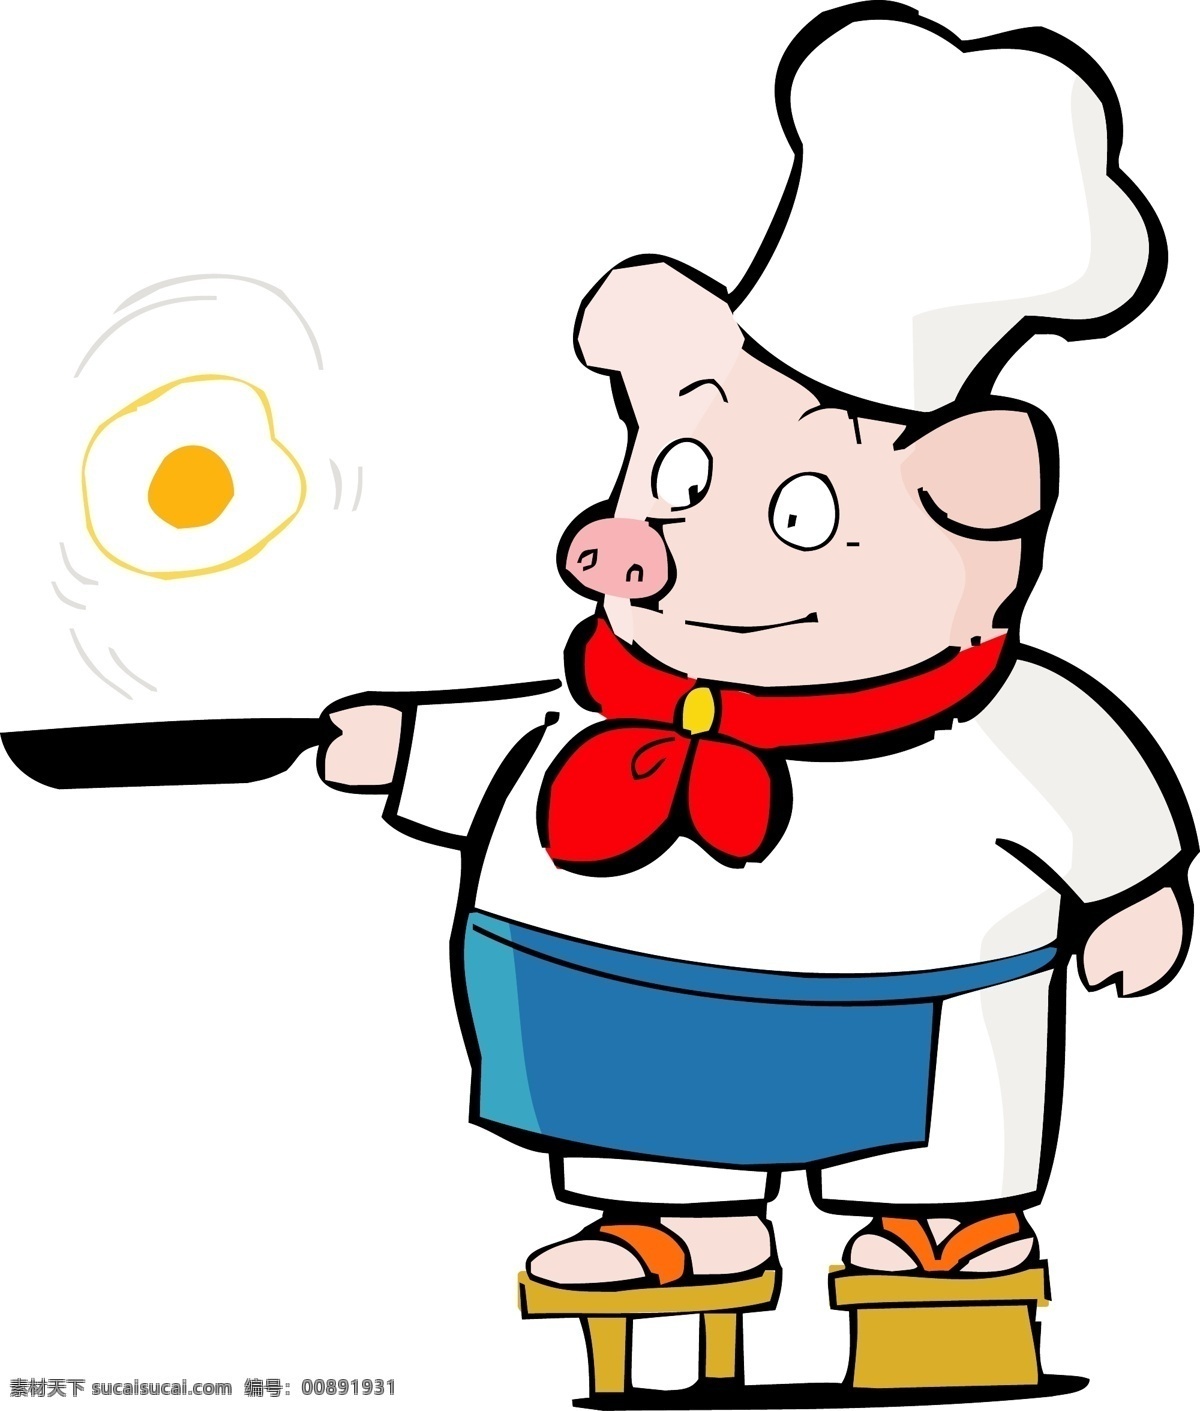 卡通 生肖 猪年 可爱 小 猪 厨师 矢量图 免费 插画 花朵 其他矢量图